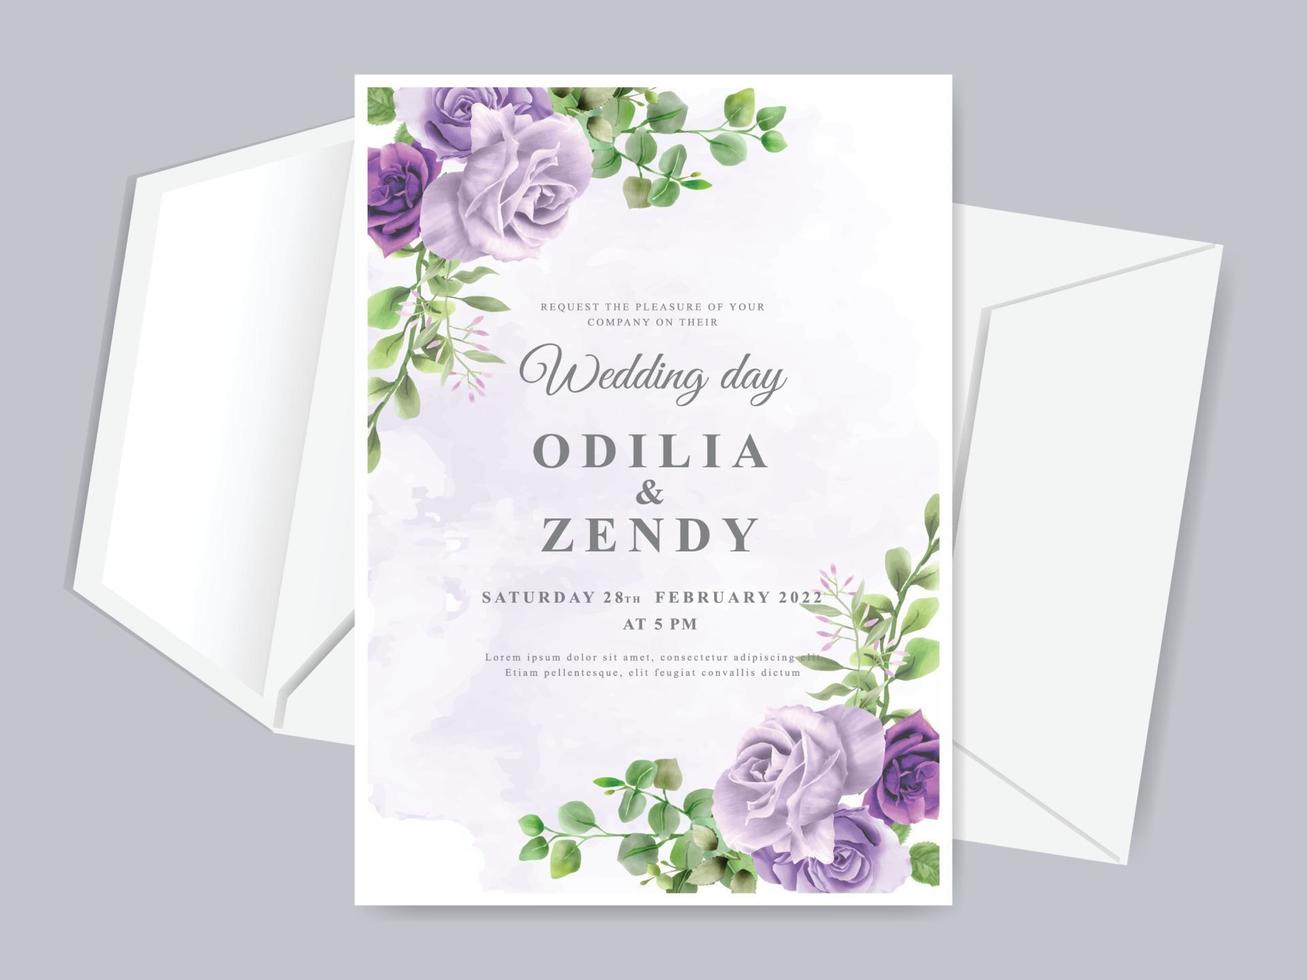 lindo modelo de cartão de convite de casamento com mão floral desenhada vetor